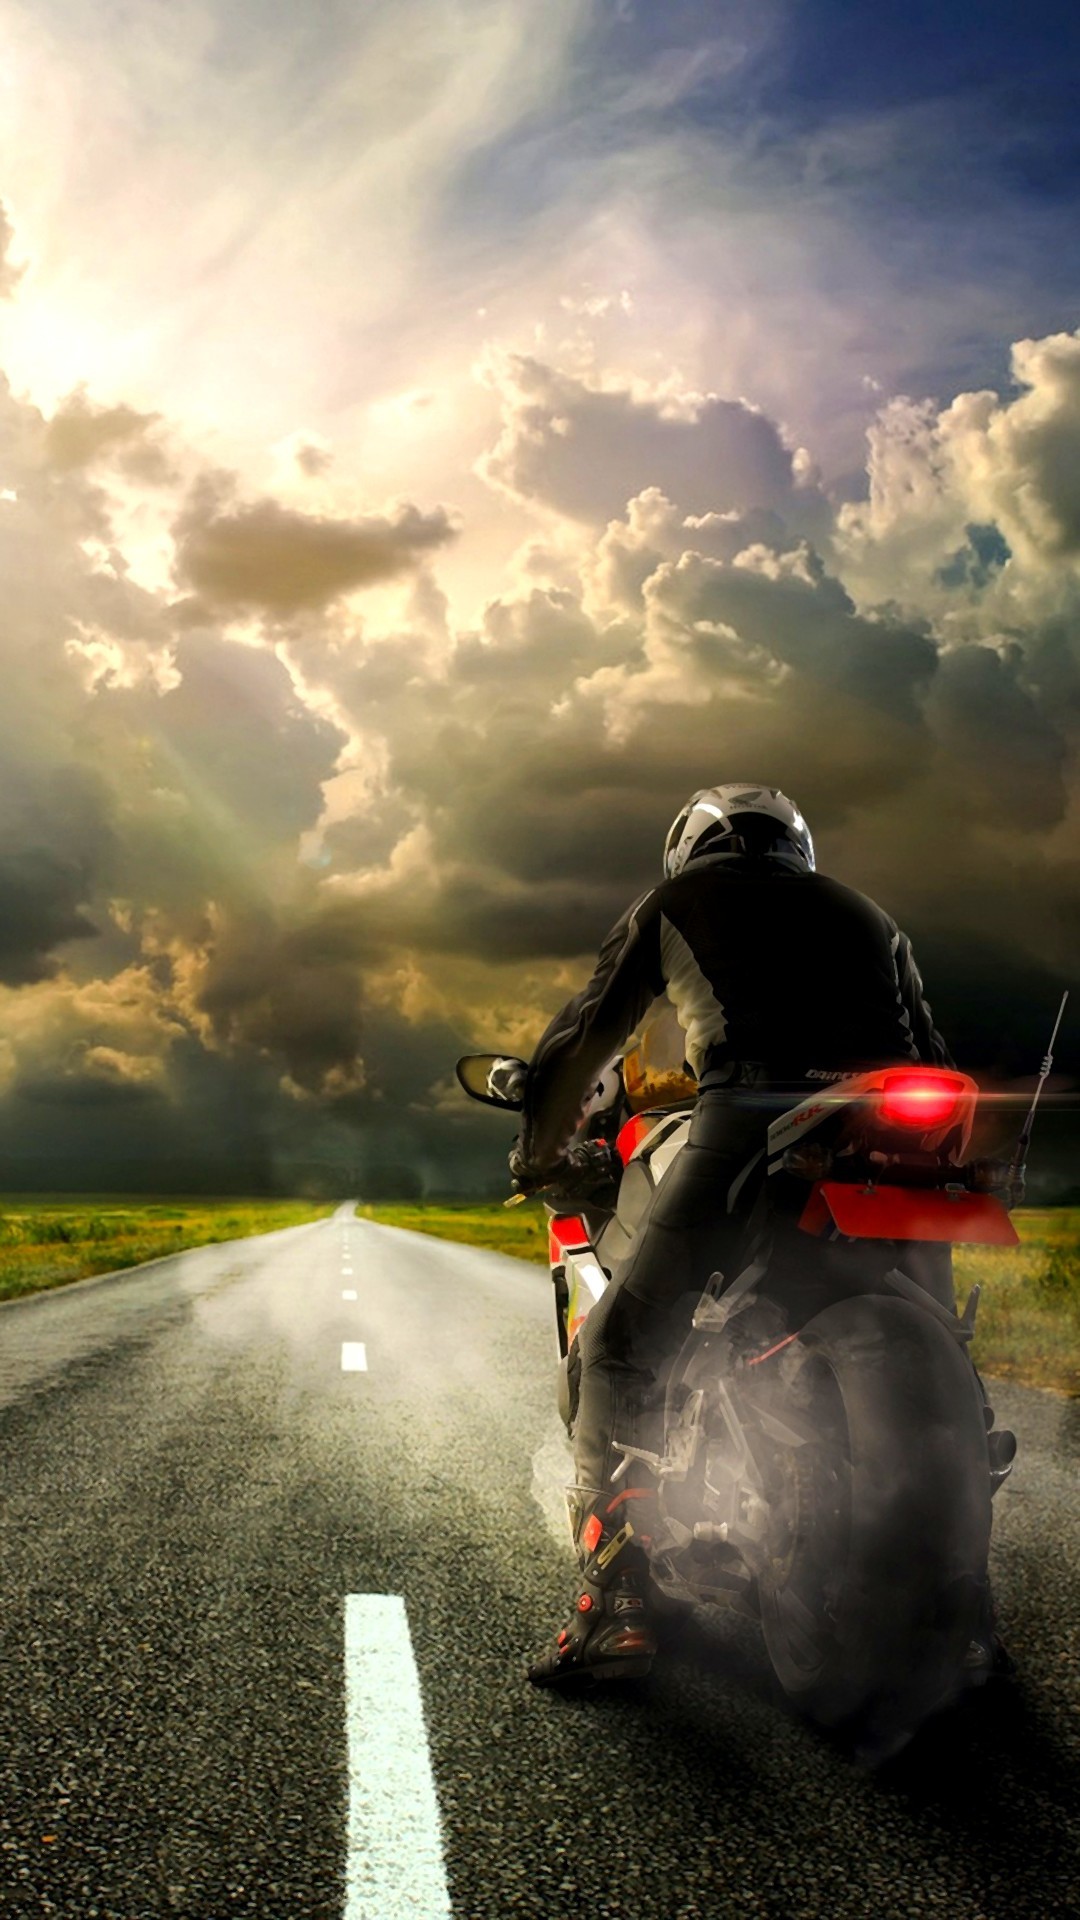 fond d'écran de moto,route,moto,faire de la moto,asphalte,ciel